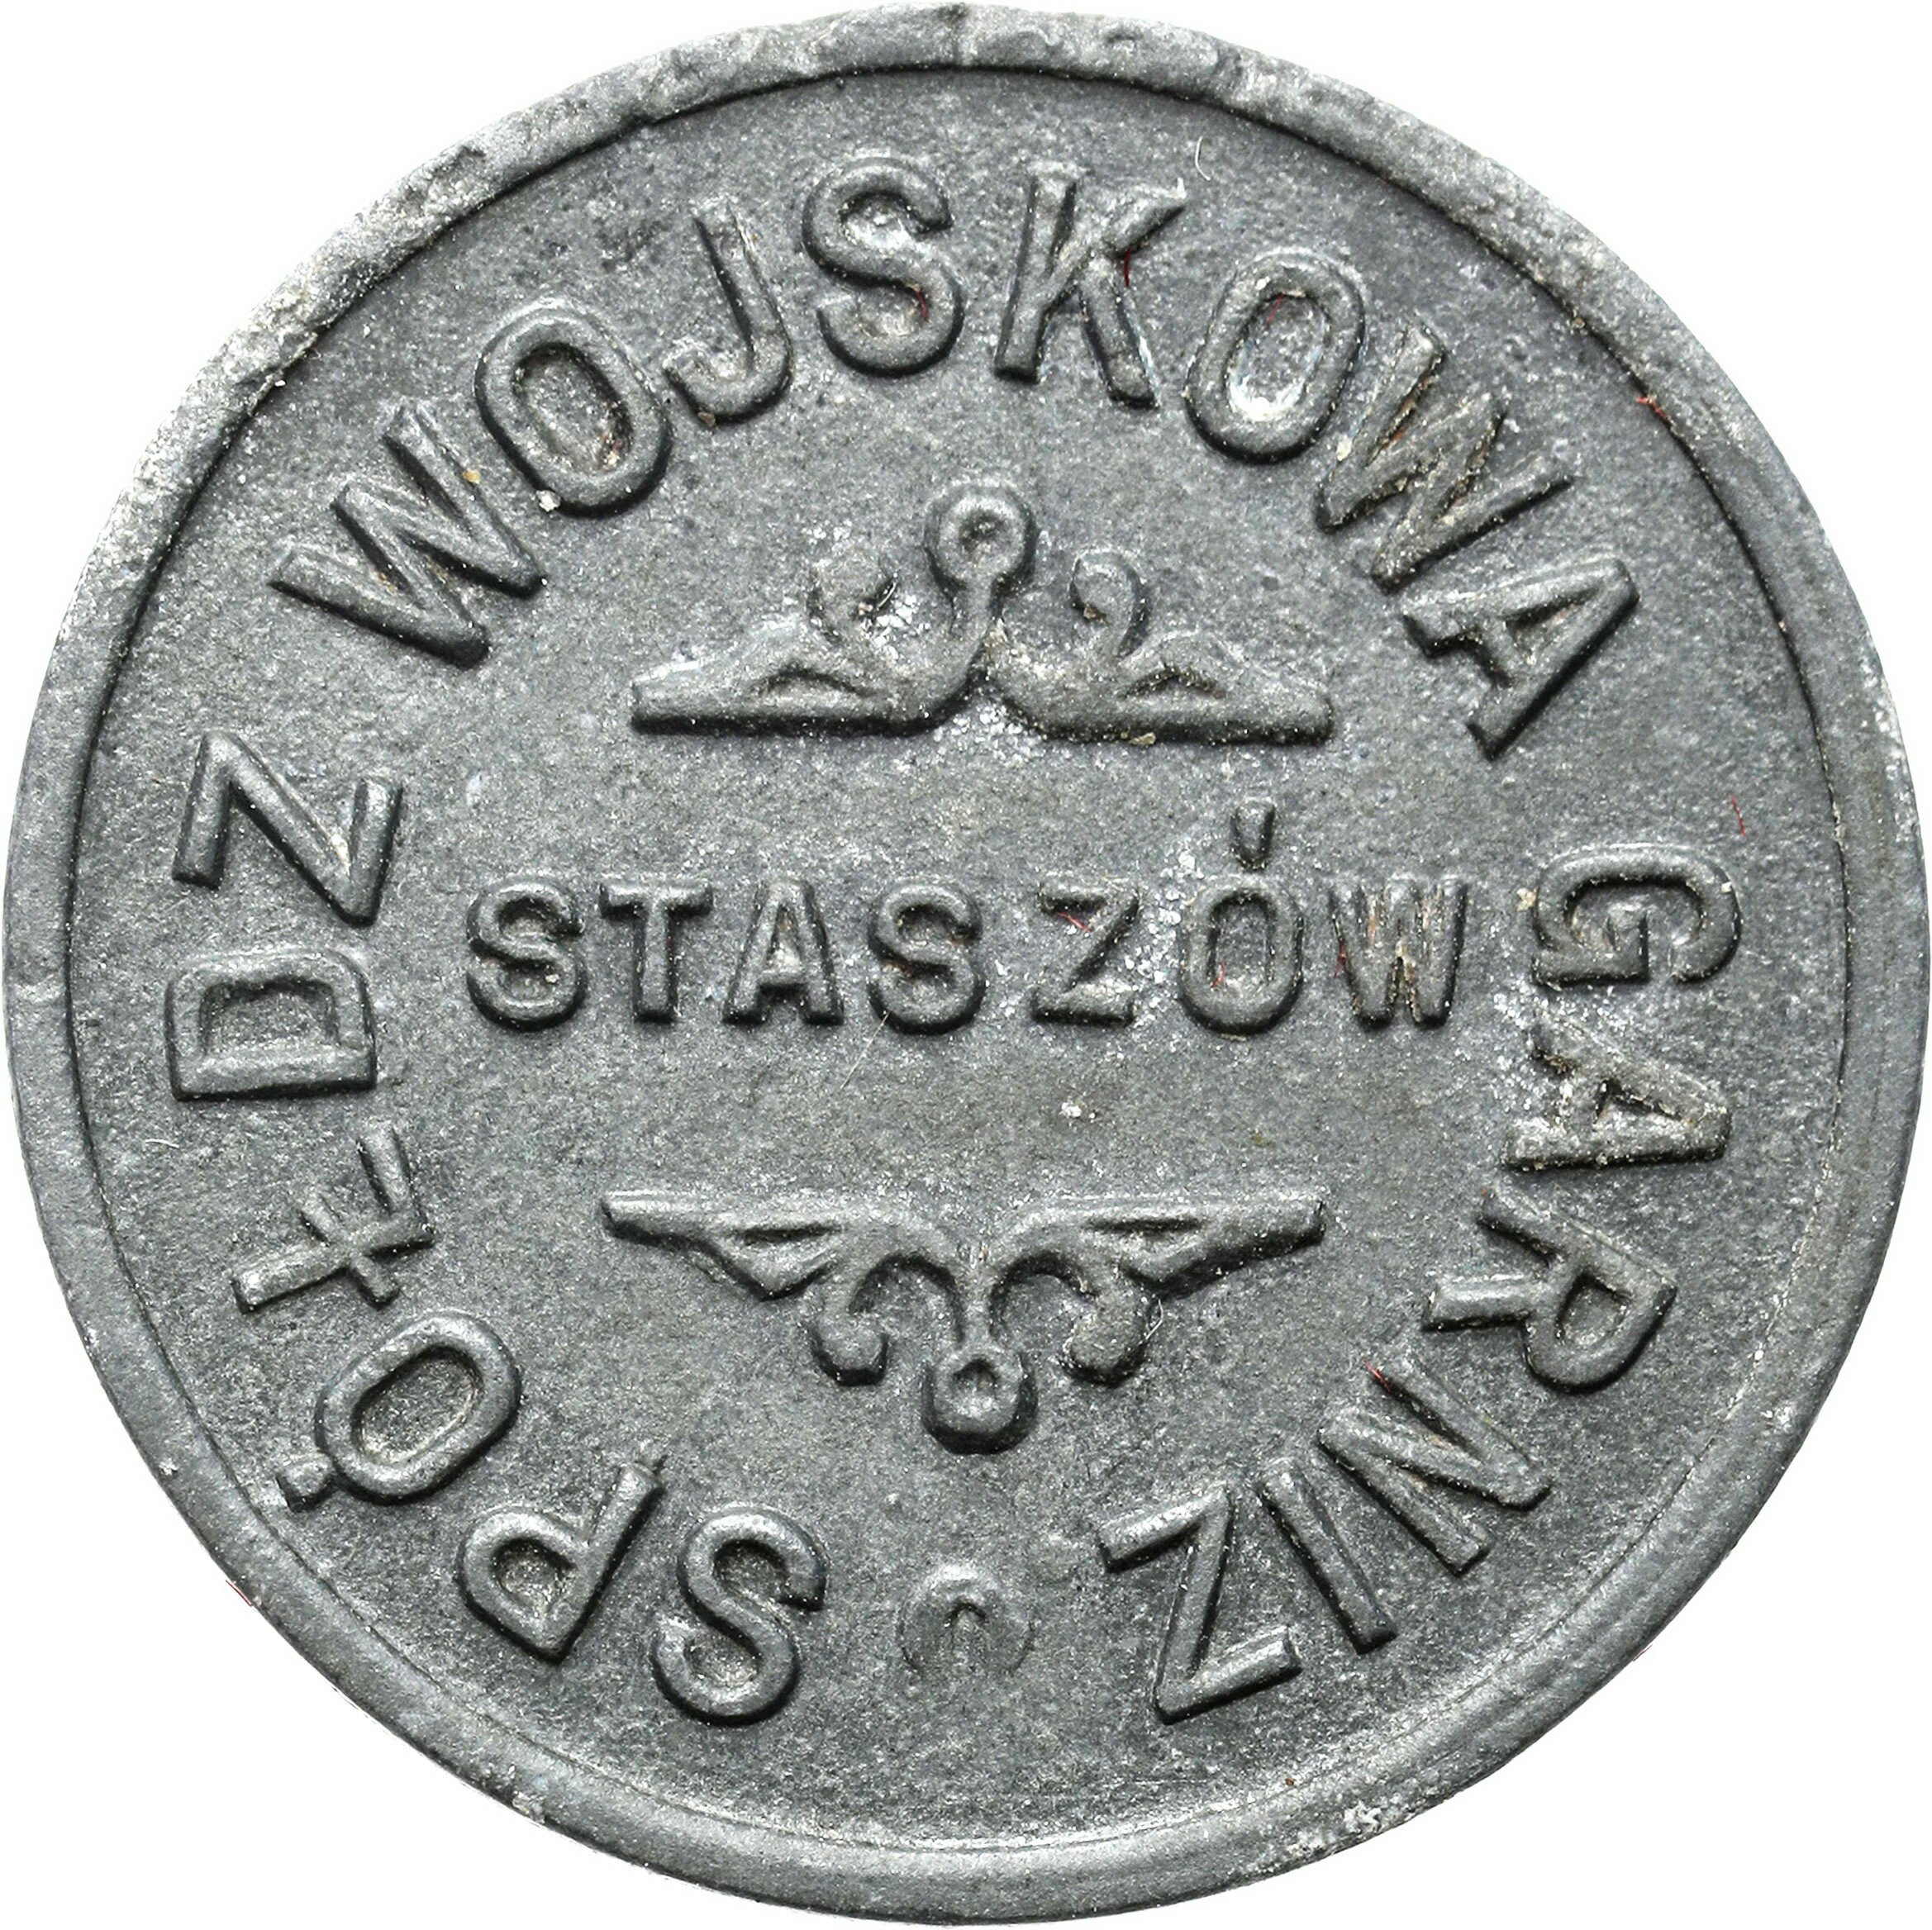 Staszów - 10 groszy 1926-1939 Spółdzielnia Garnizonu Staszów